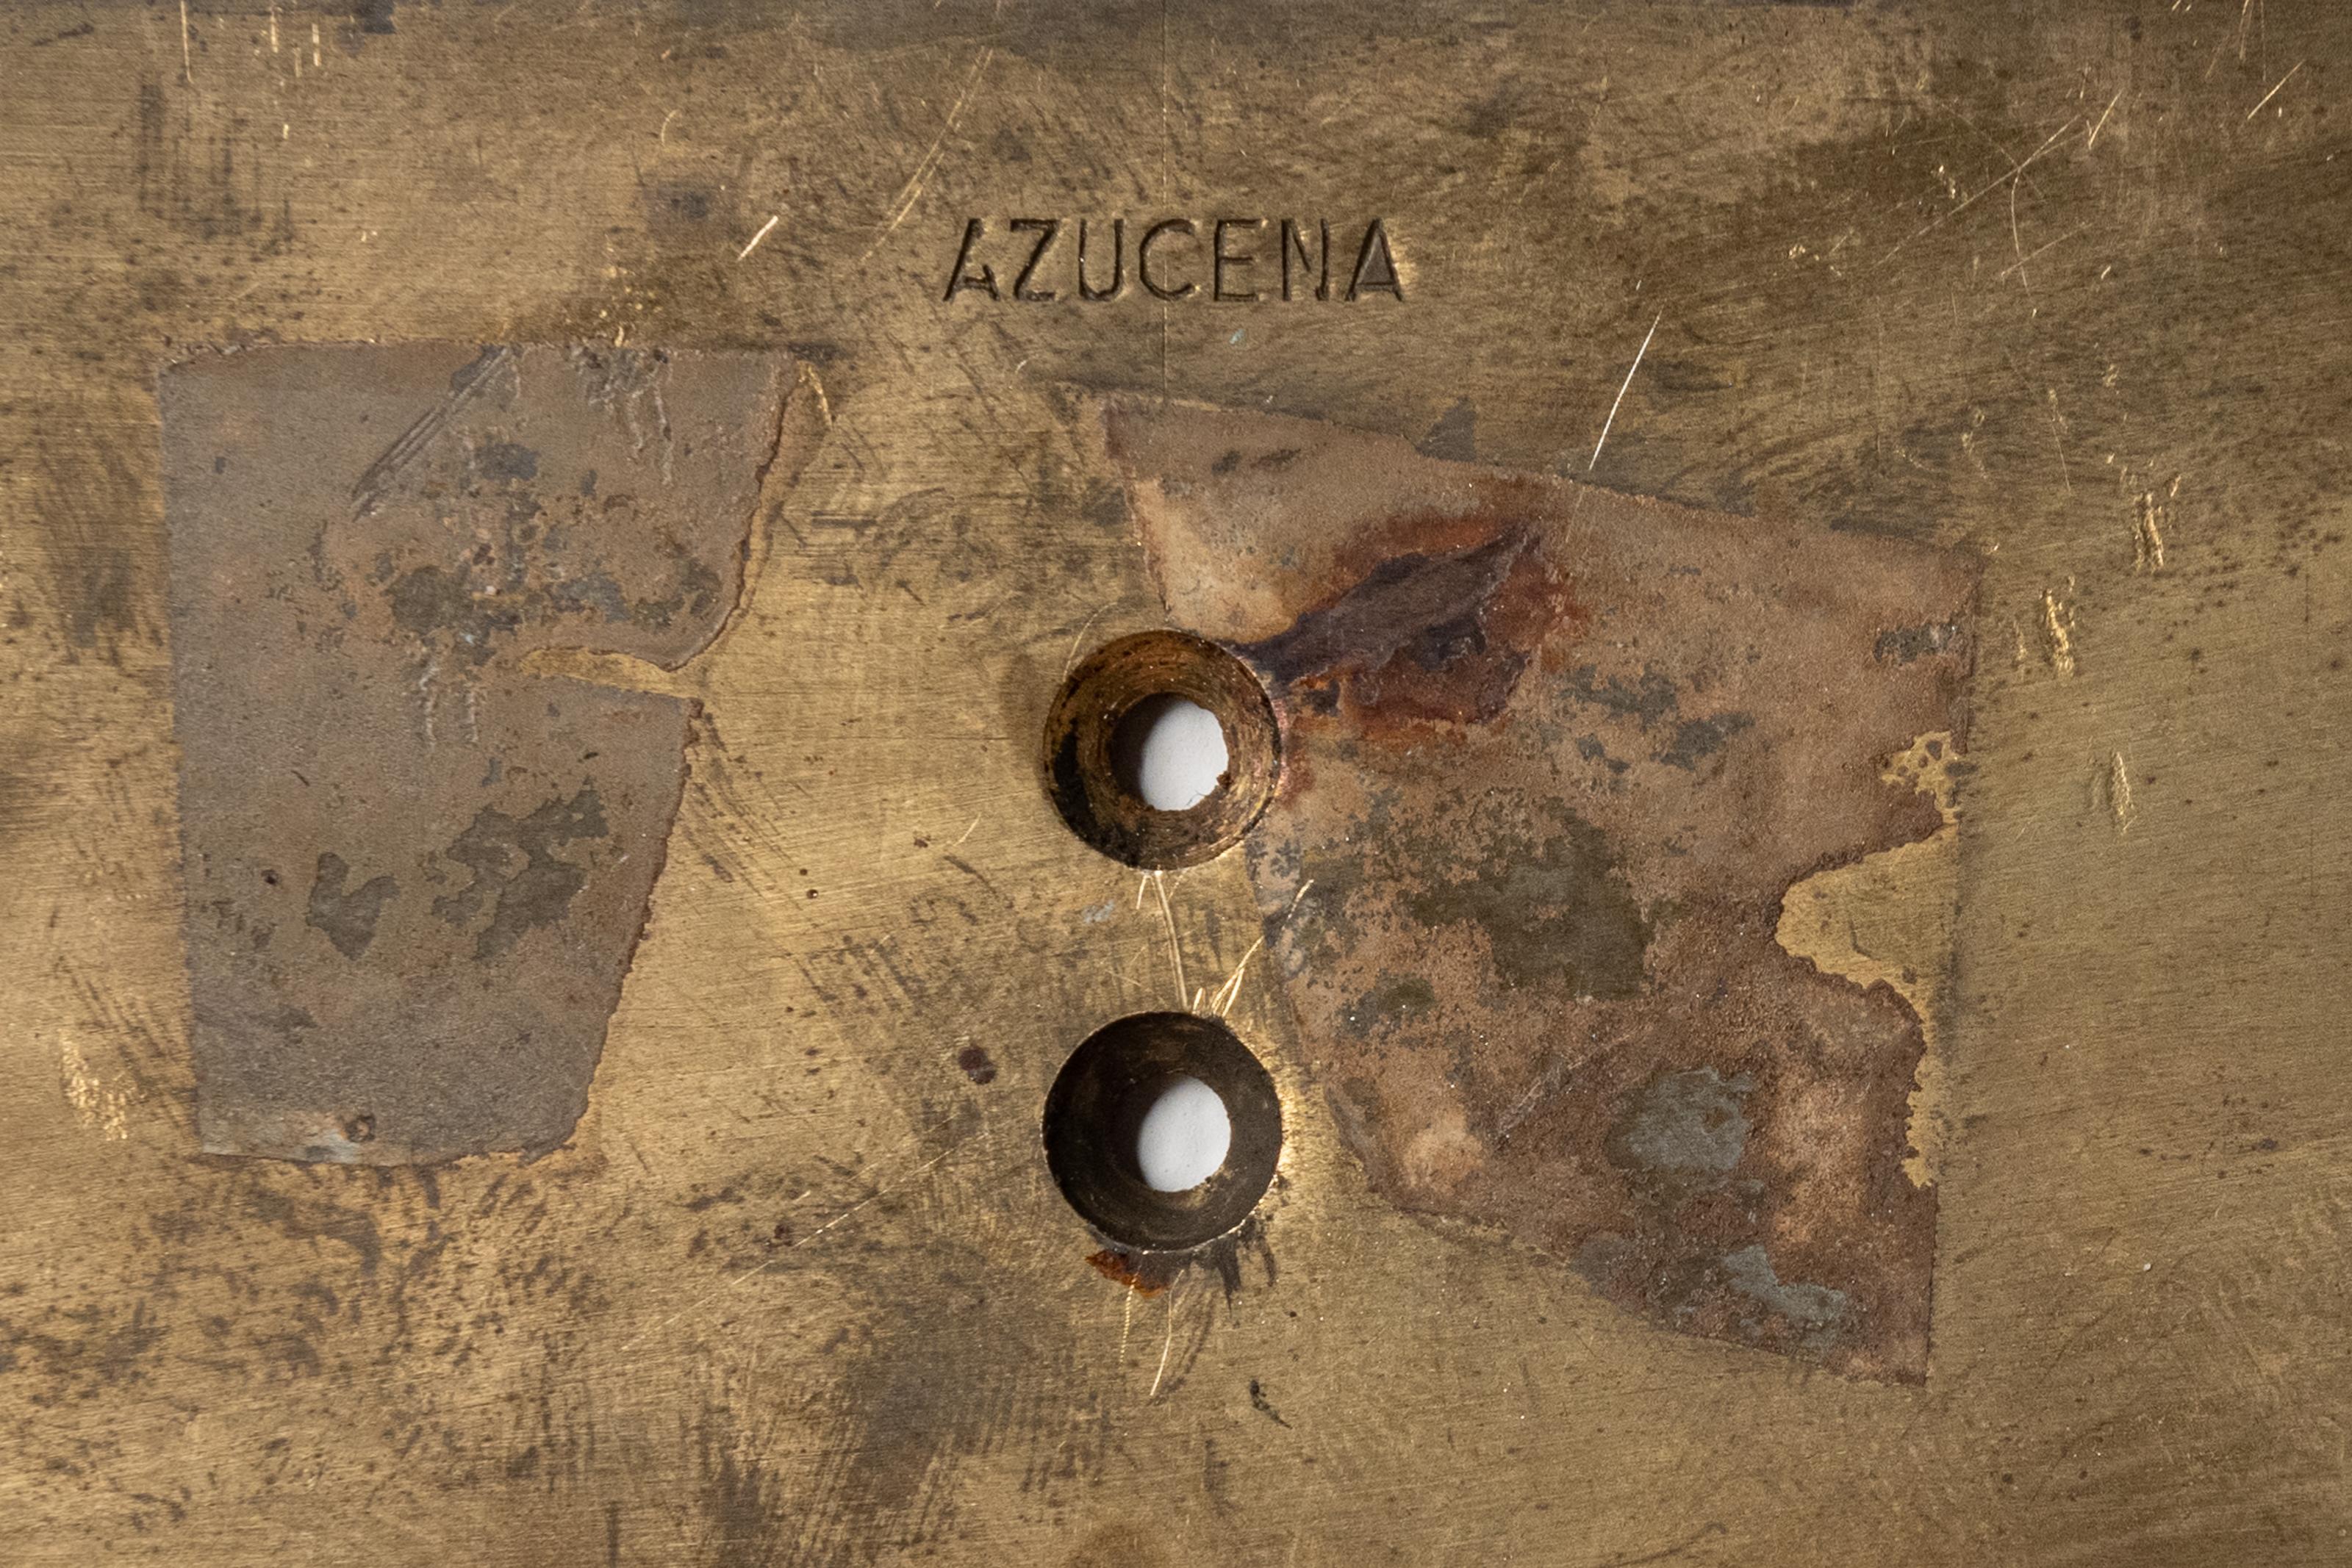 Two Rare Model Lp8 Sconces by Ignazio Gardella for Azucena 2